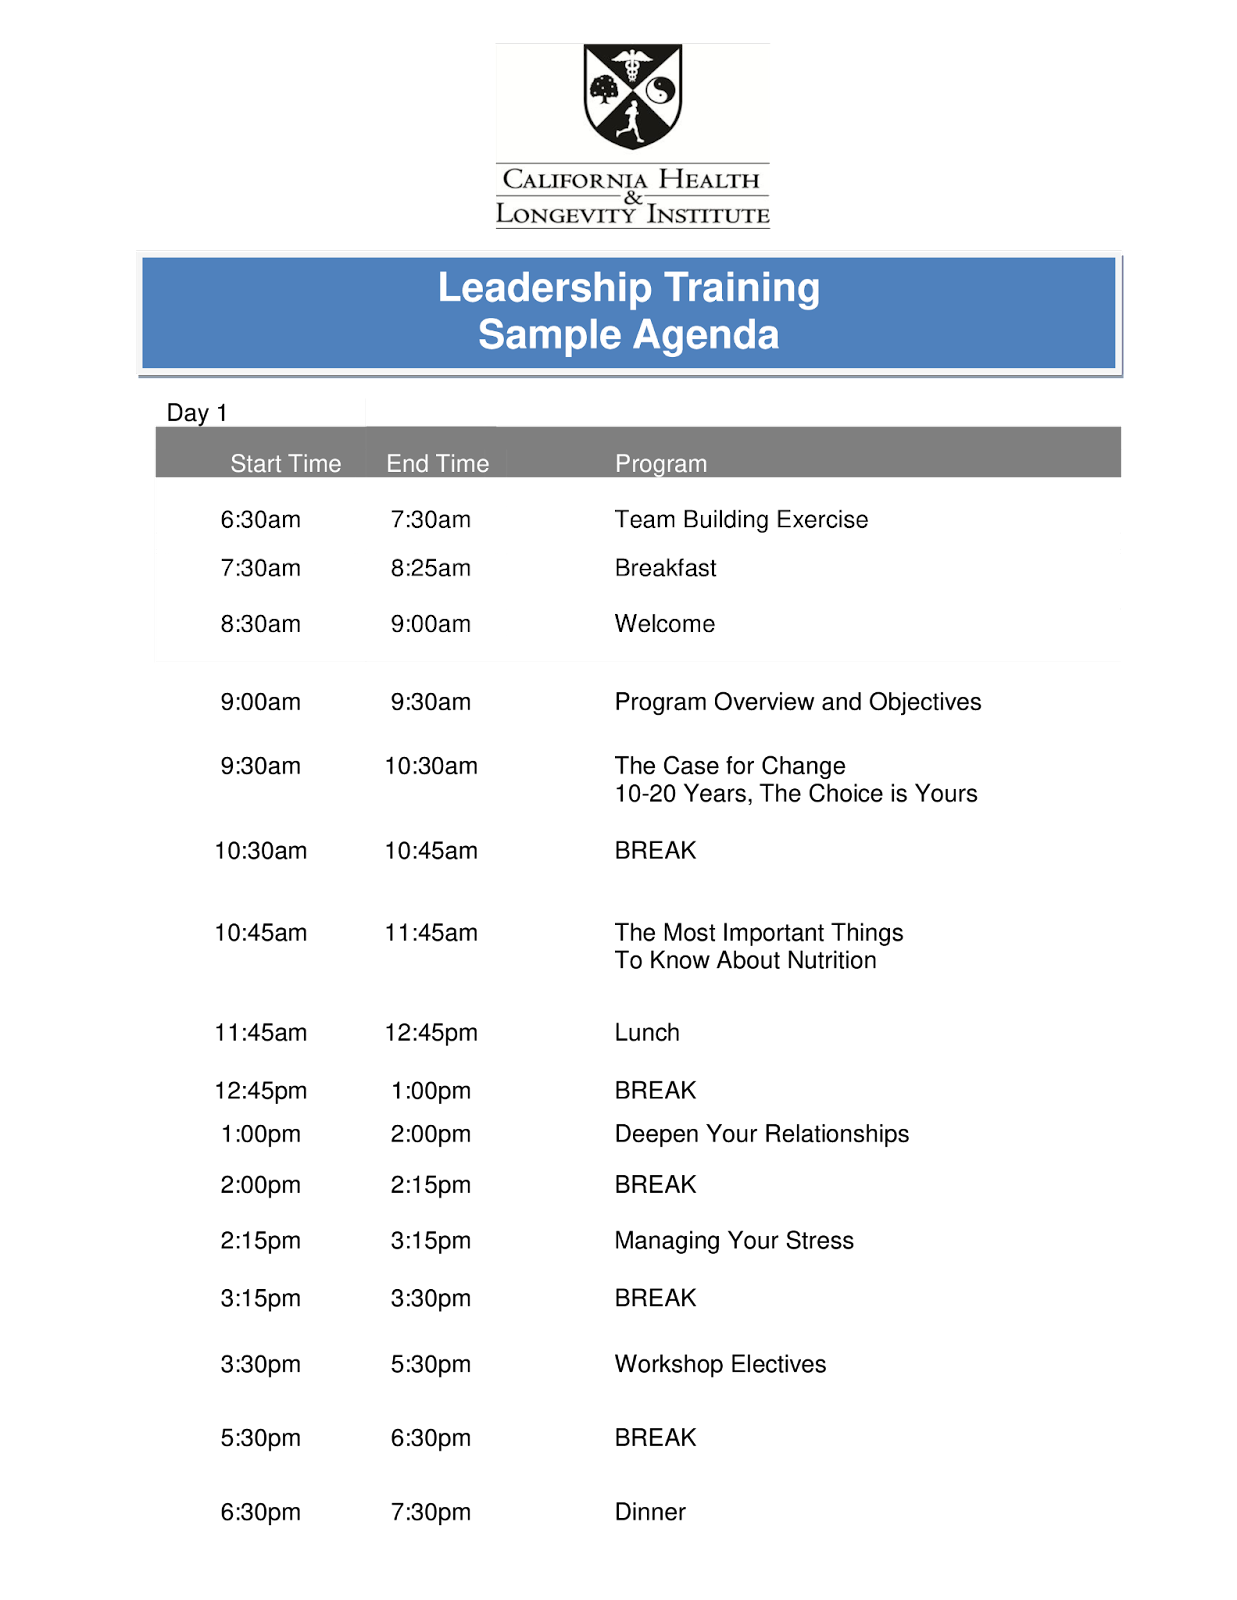 Leadership training sample agenda